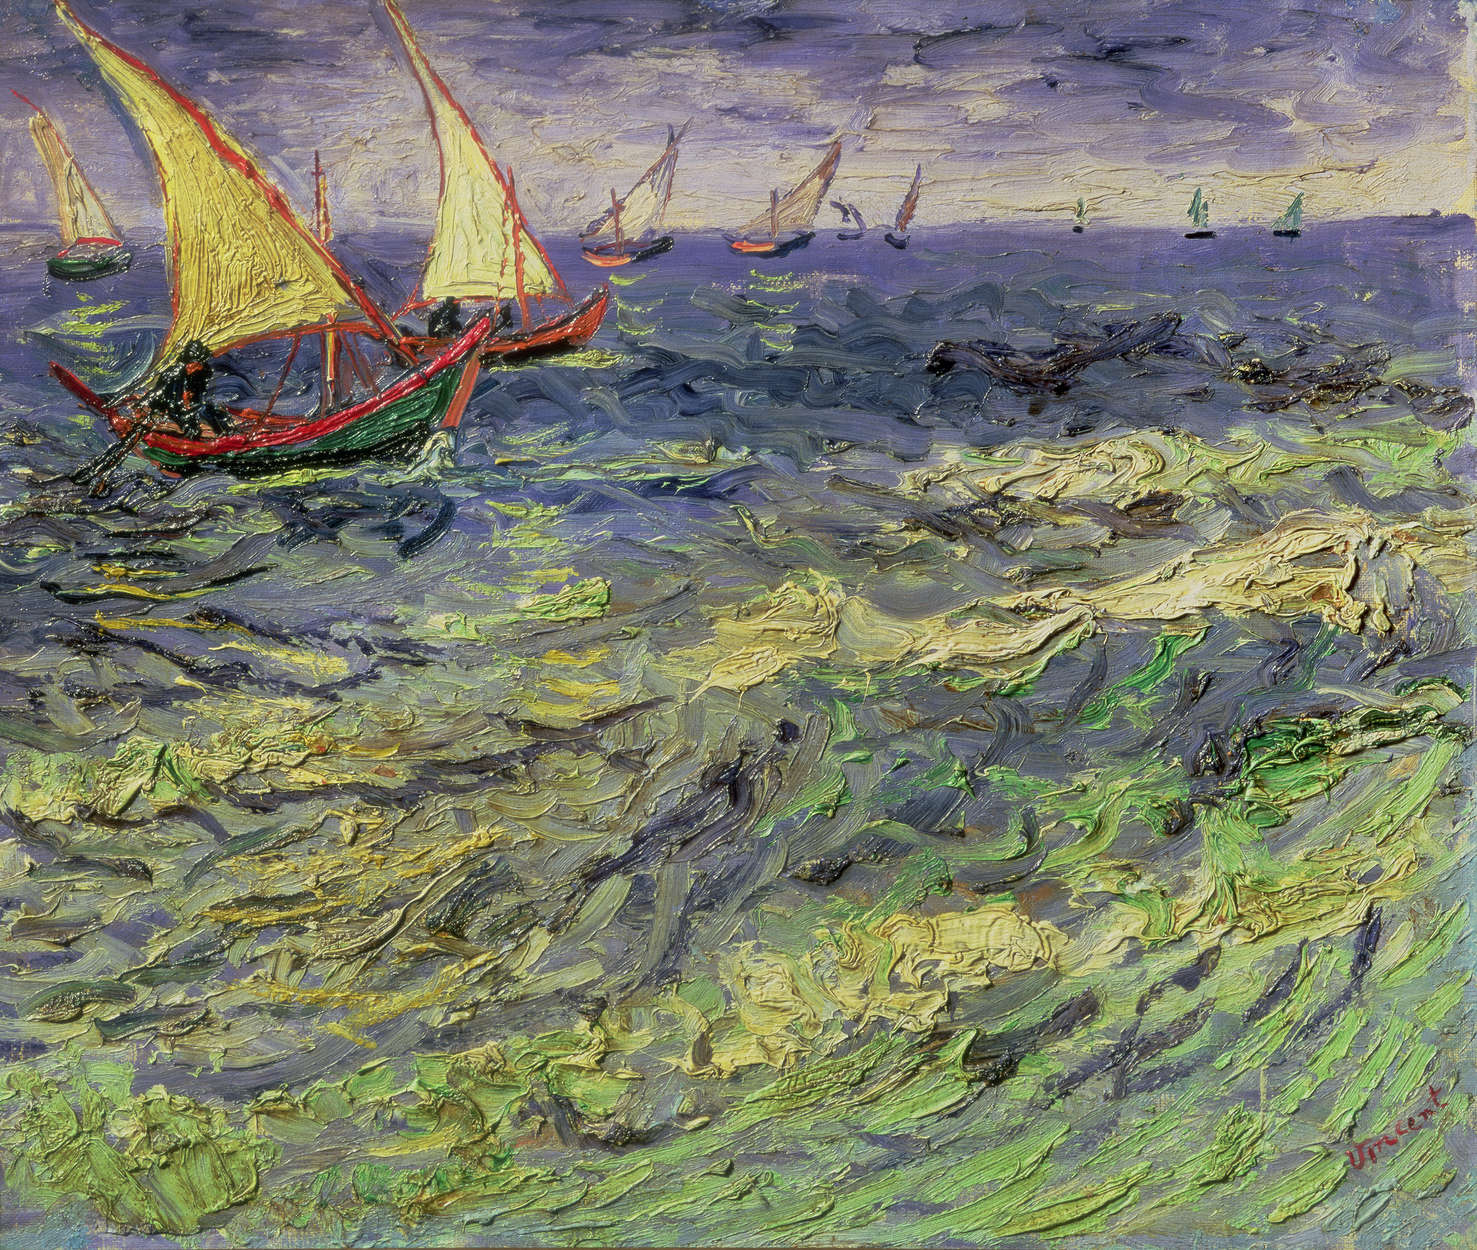             Fototapete "Seelandschaft bei Saintes-Maries " von Vincent van Gogh
        